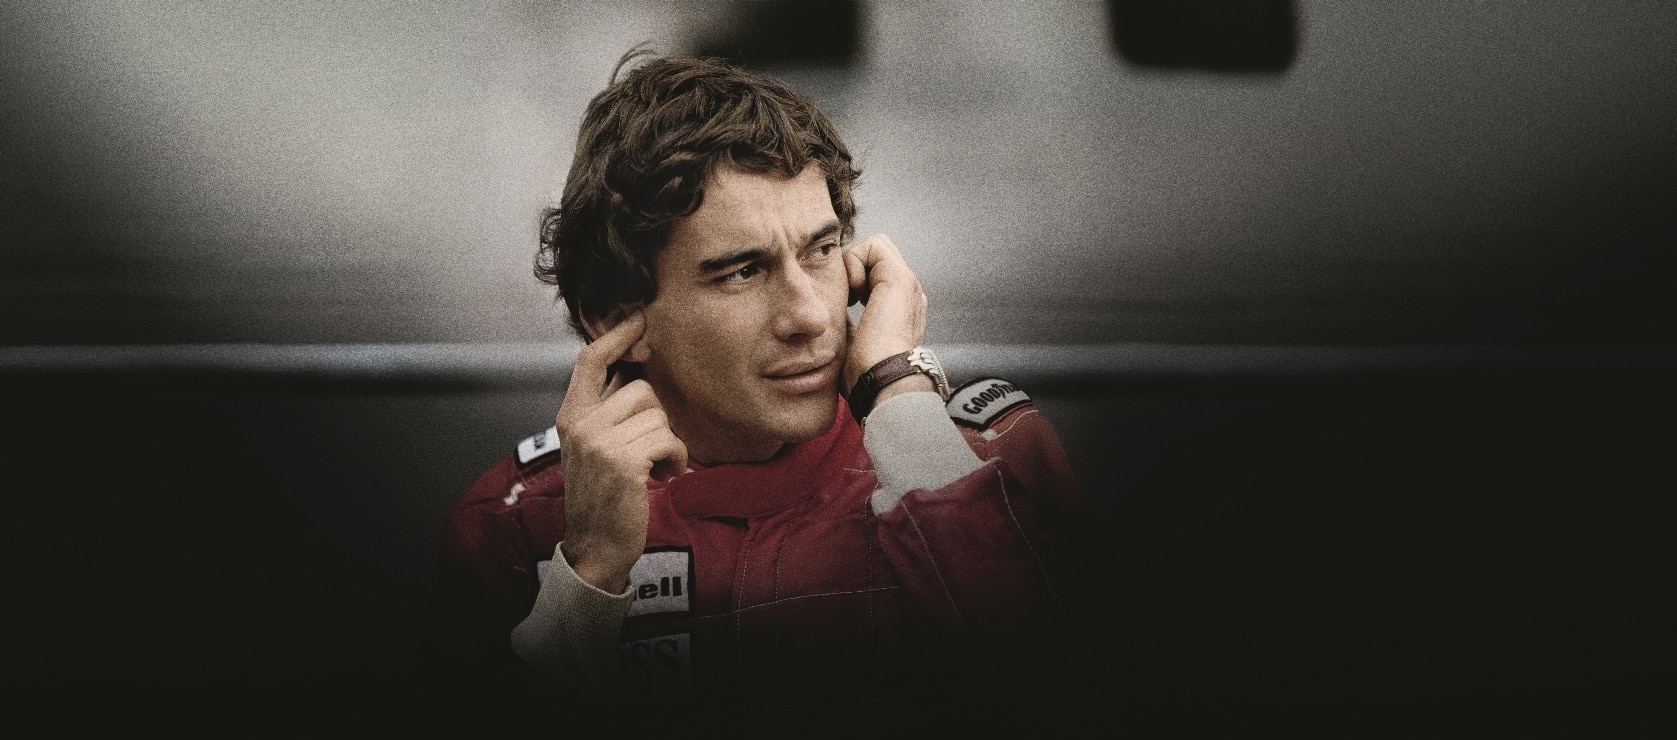 Estos fueron los relojes de Ayrton Senna - Ultrajewels